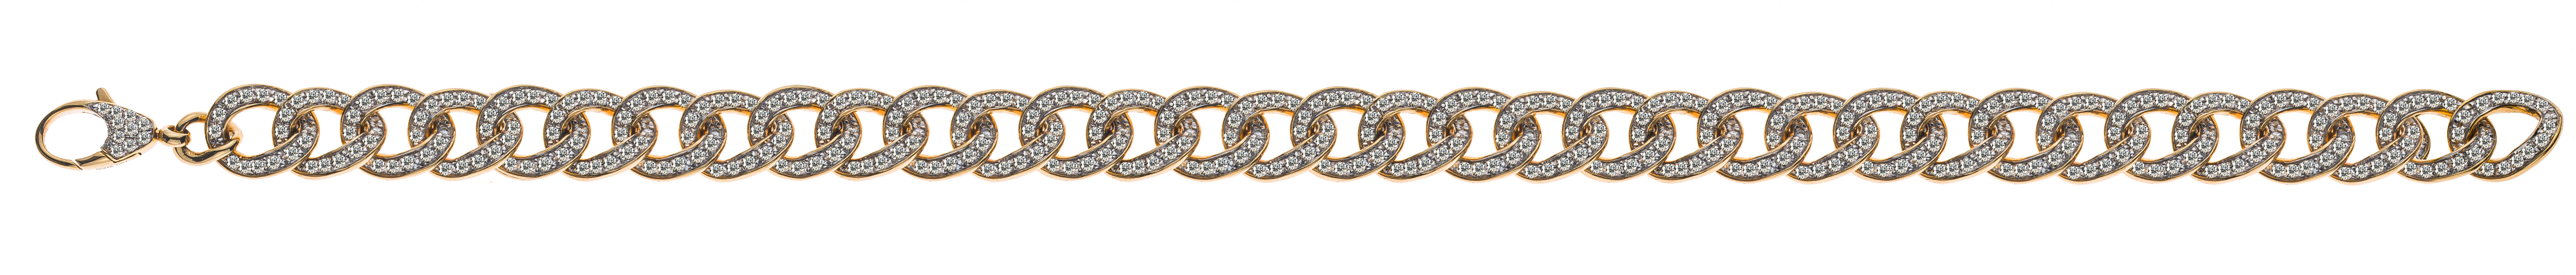 AURONOS Prestige Bracelet Panzer 18K Yellow Gold 570 Diamonds 2.03ct 19cm